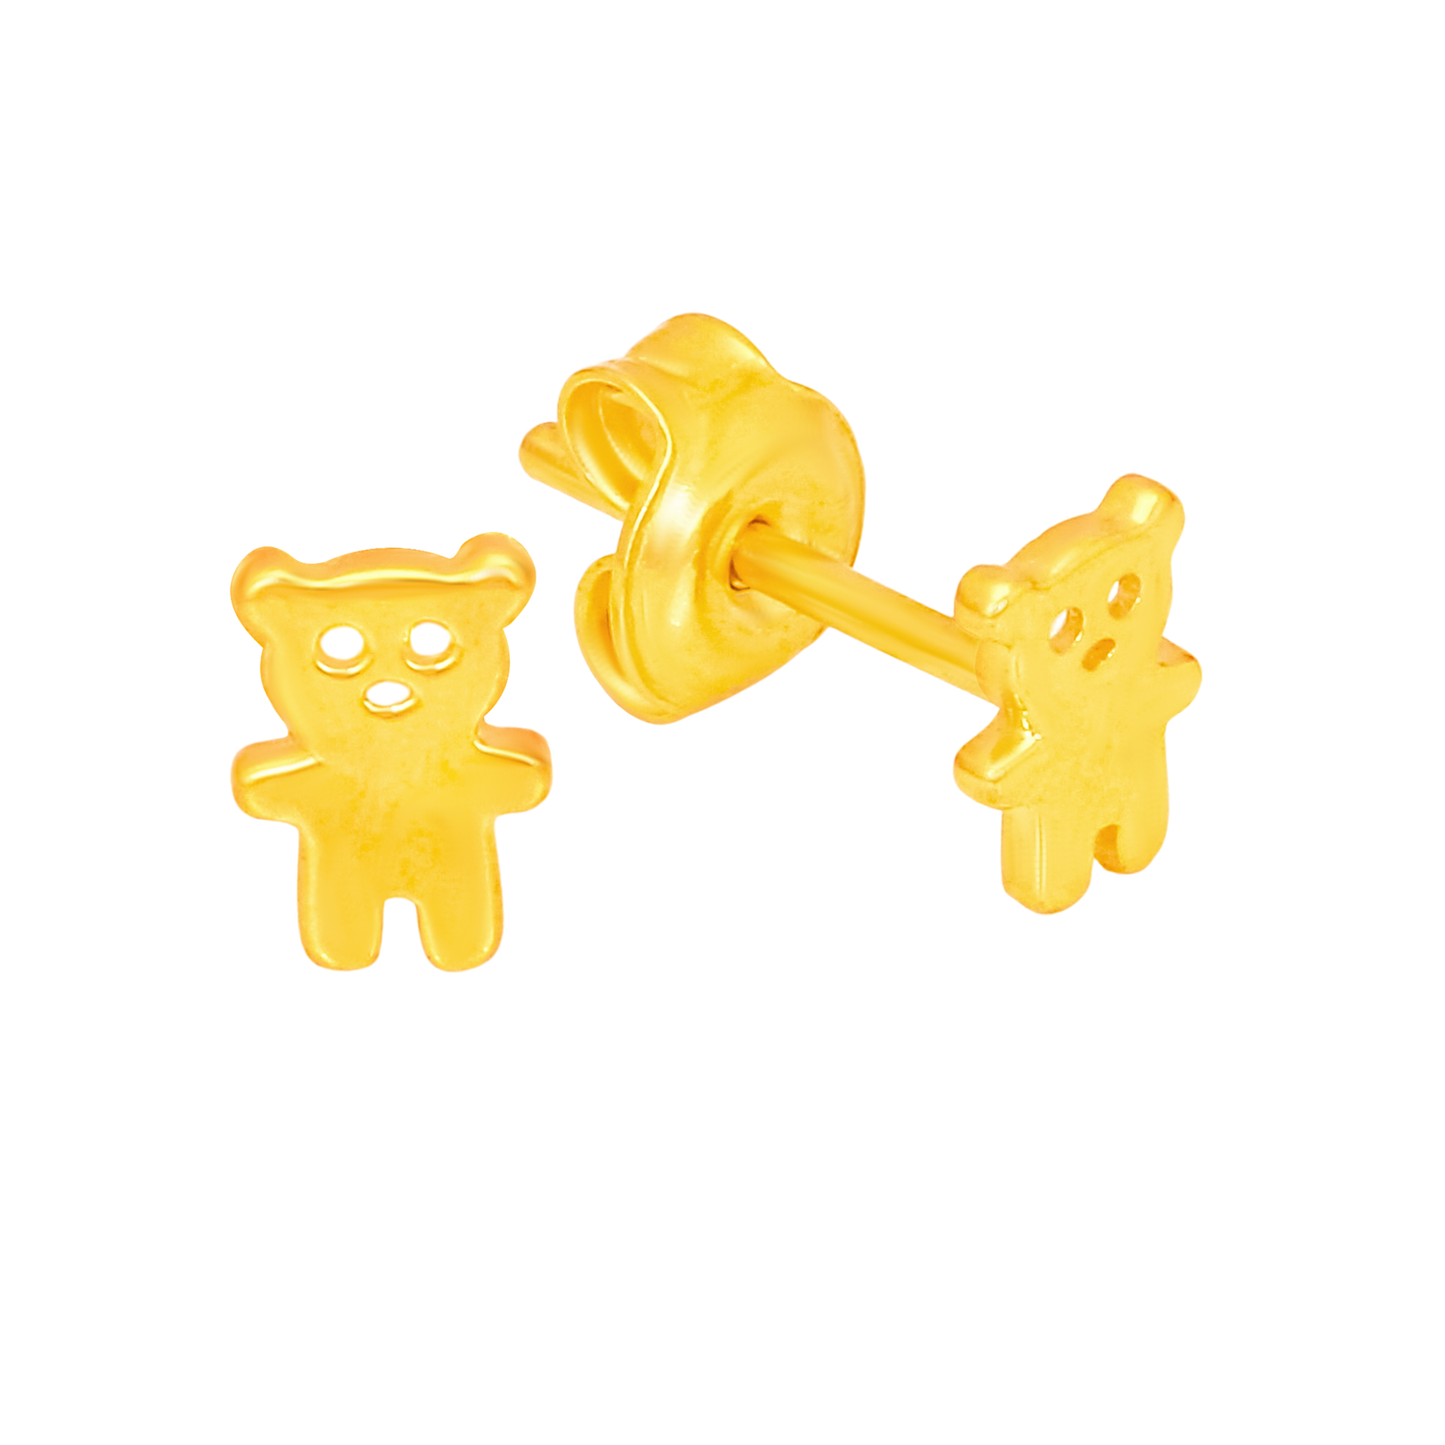 TAKA Jewellery 916 Gold Earrings Bear